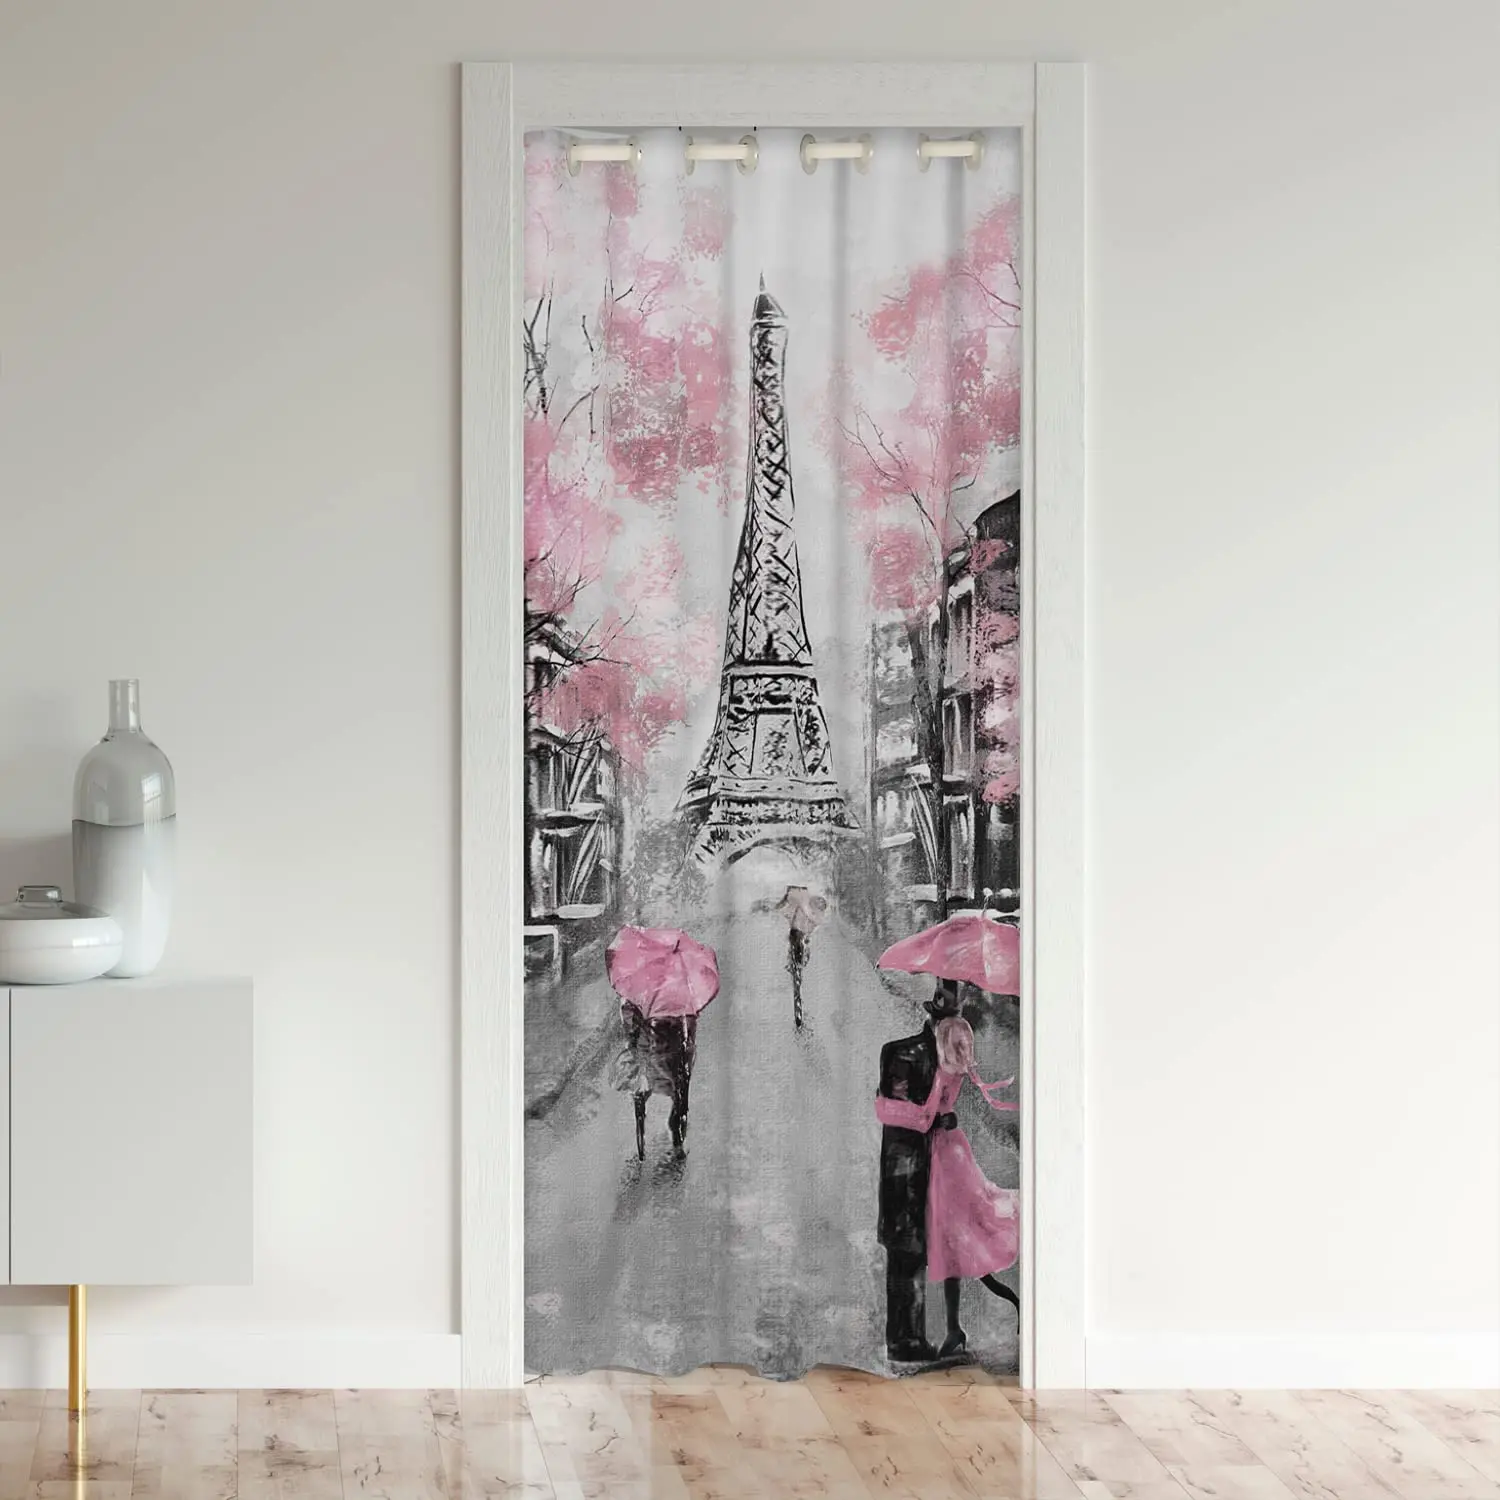 

Дверные Шторы с принтом Парижской Эйфелевой башни, занавески из полиэстера для конфиденциальности в шкафу, для спальни, комнаты на День святого Валентина, домашние оконные процедуры